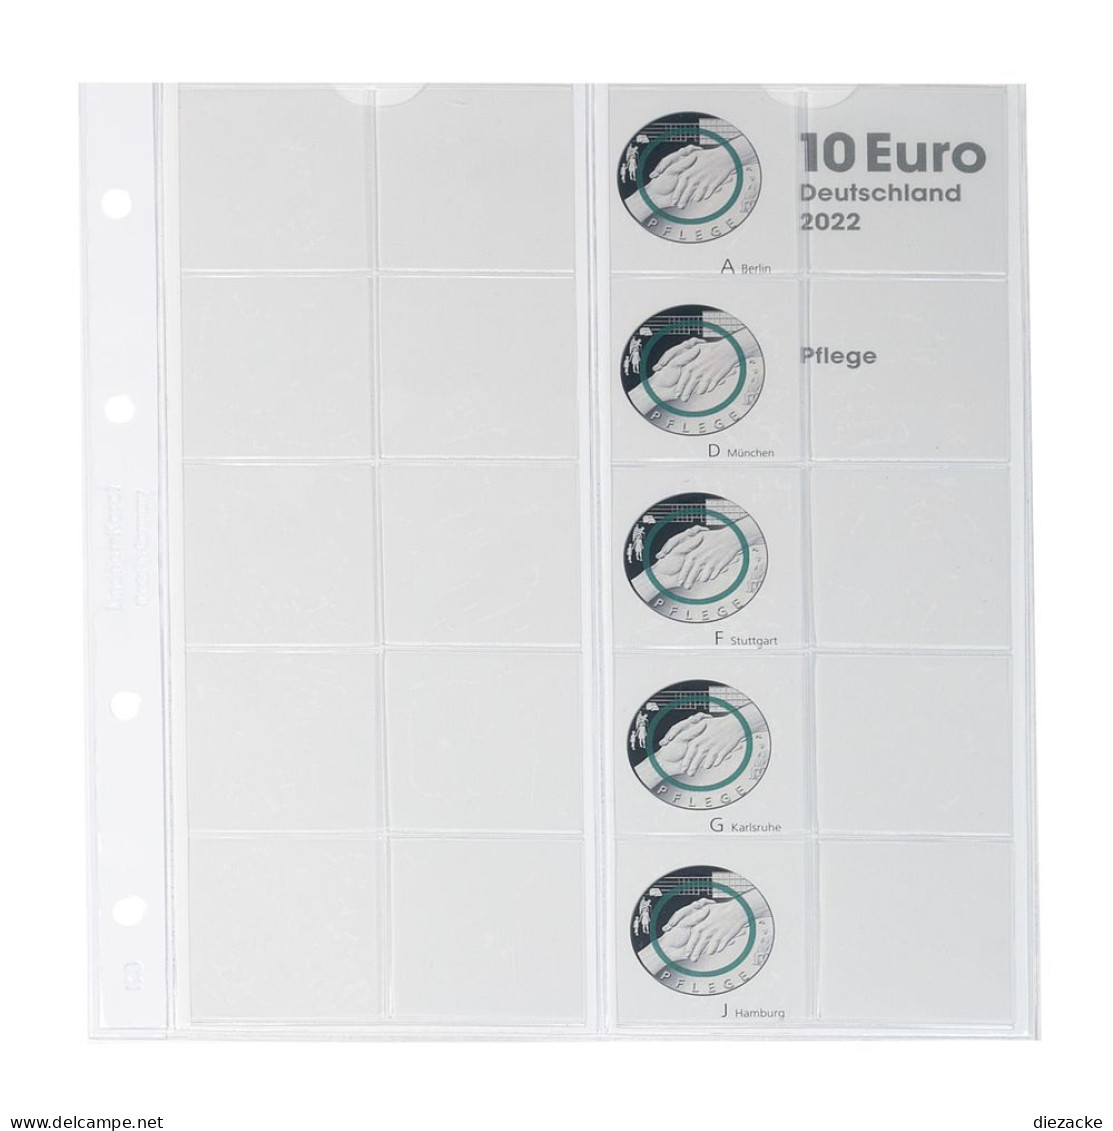 Lindner Vordruckblatt Karat Für 10 Euro-Münzen Polymerring 1110-4 Neu - Materiale